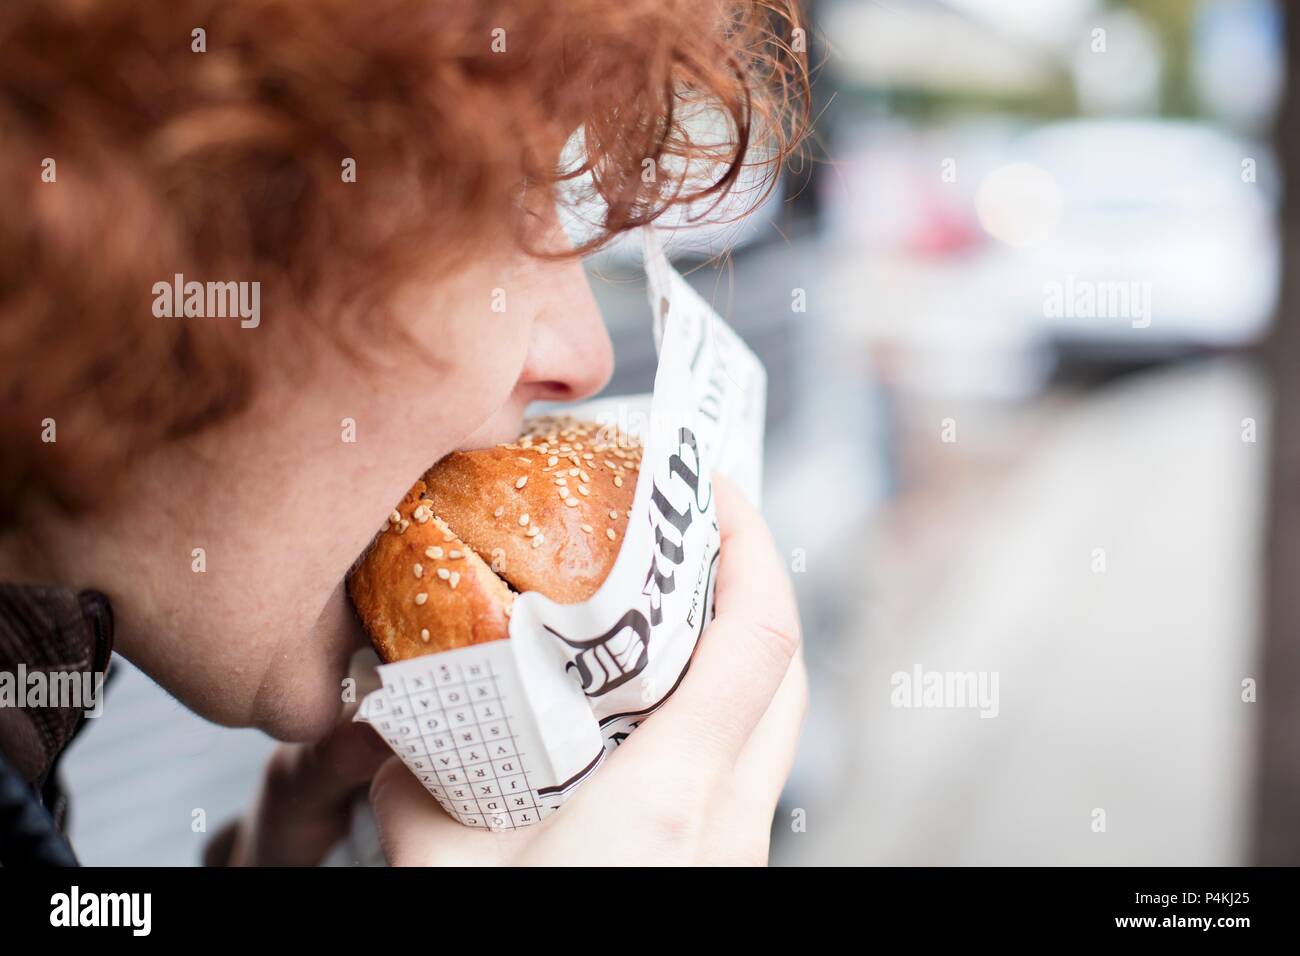 Una i capelli rossi adolescente di mordere in un hamburger Foto Stock